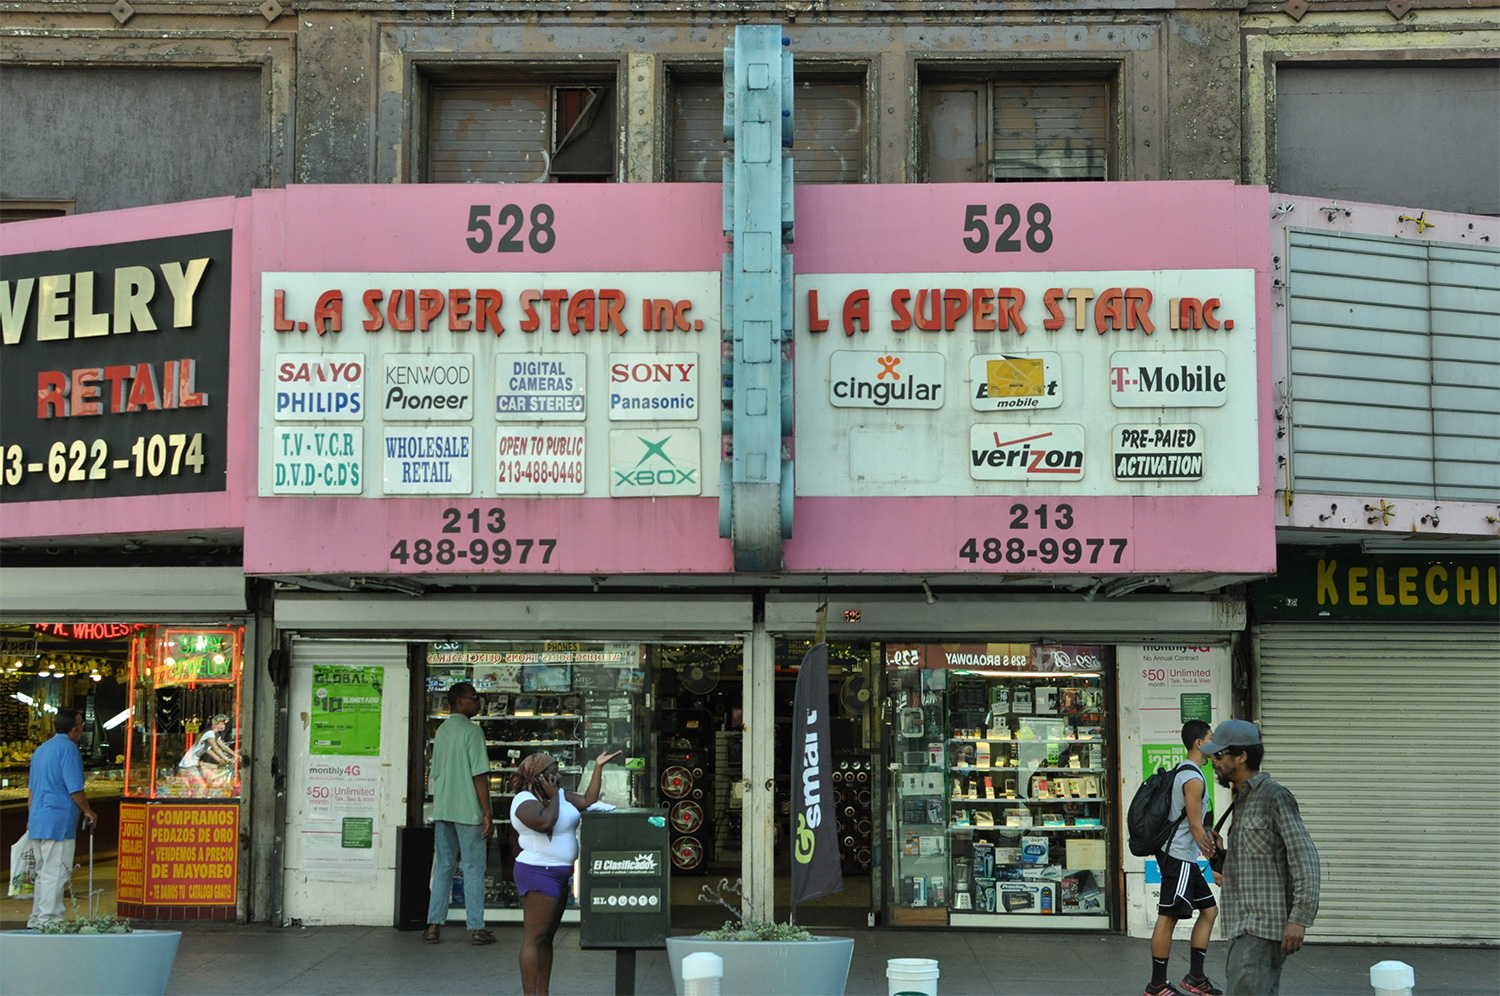 L.A. Super Start Inc., L.A.